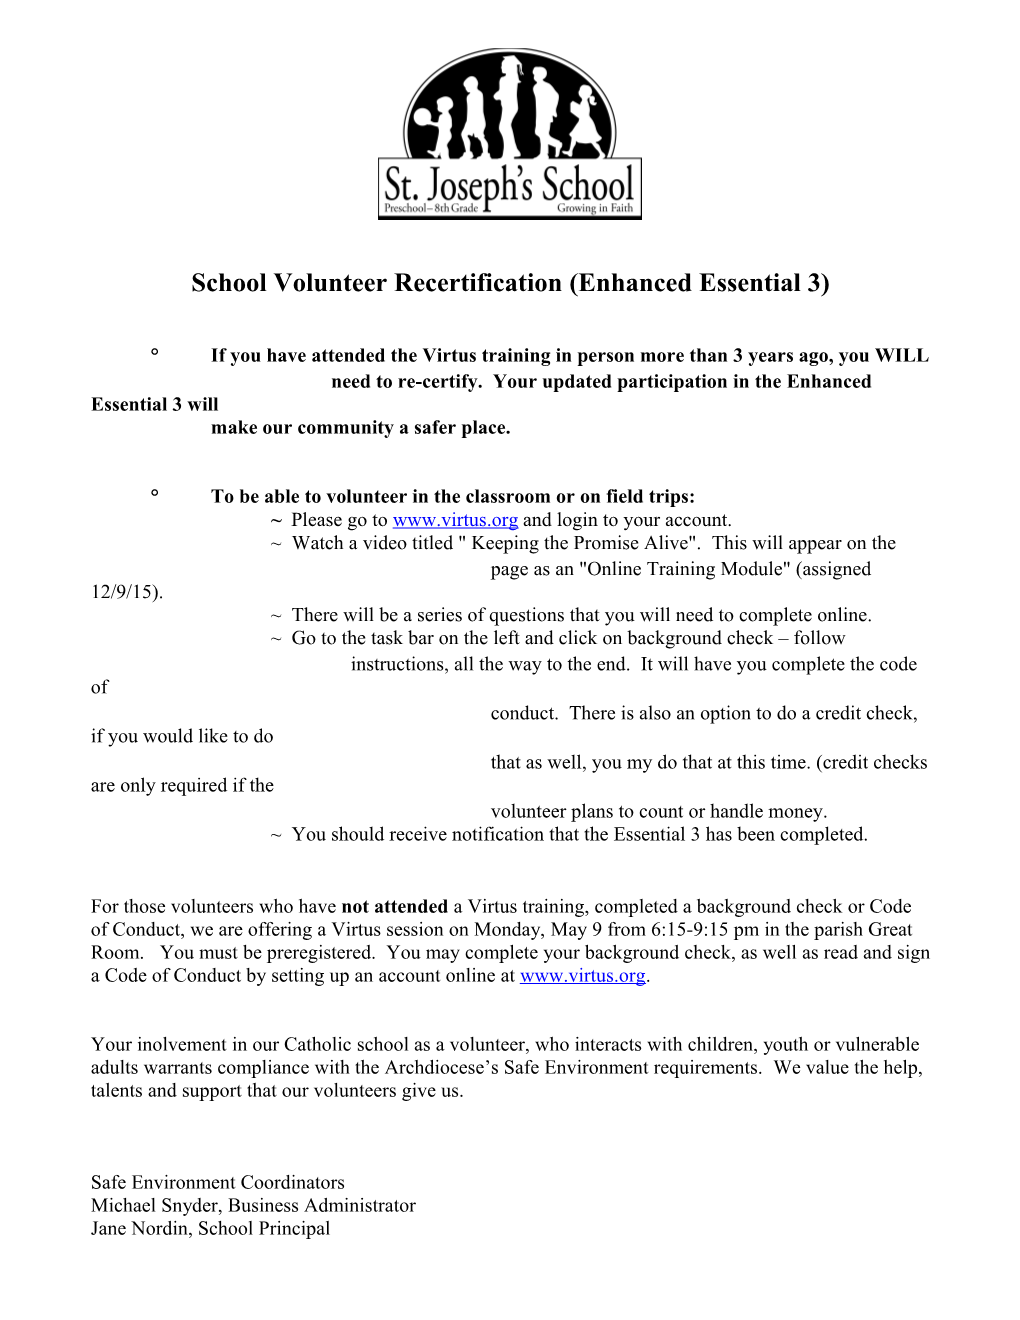 School Volunteer Recertification (Enhanced Essential 3) s1